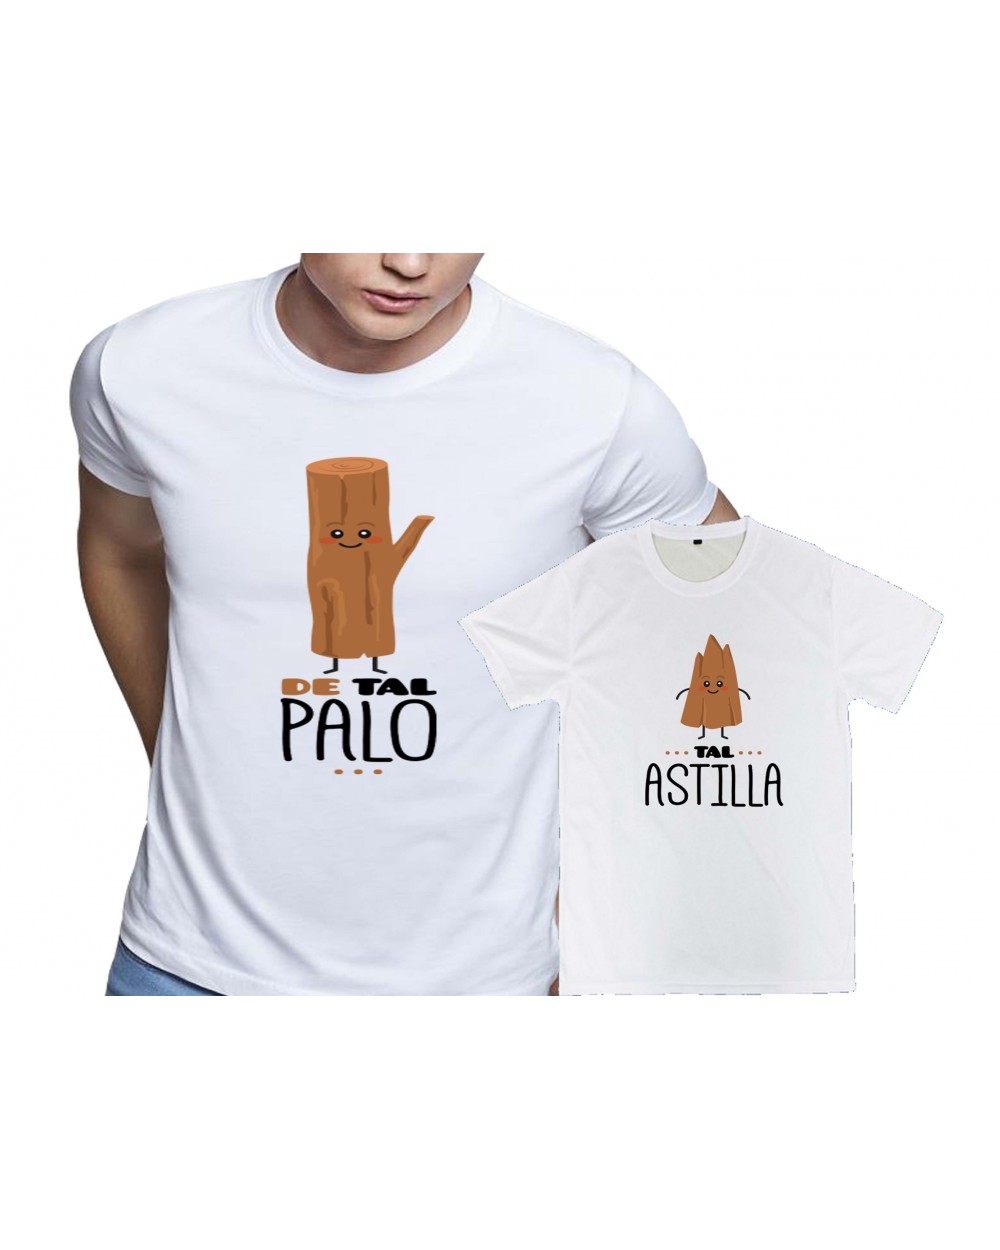 Camisetas De Tal Palo Tal Astilla